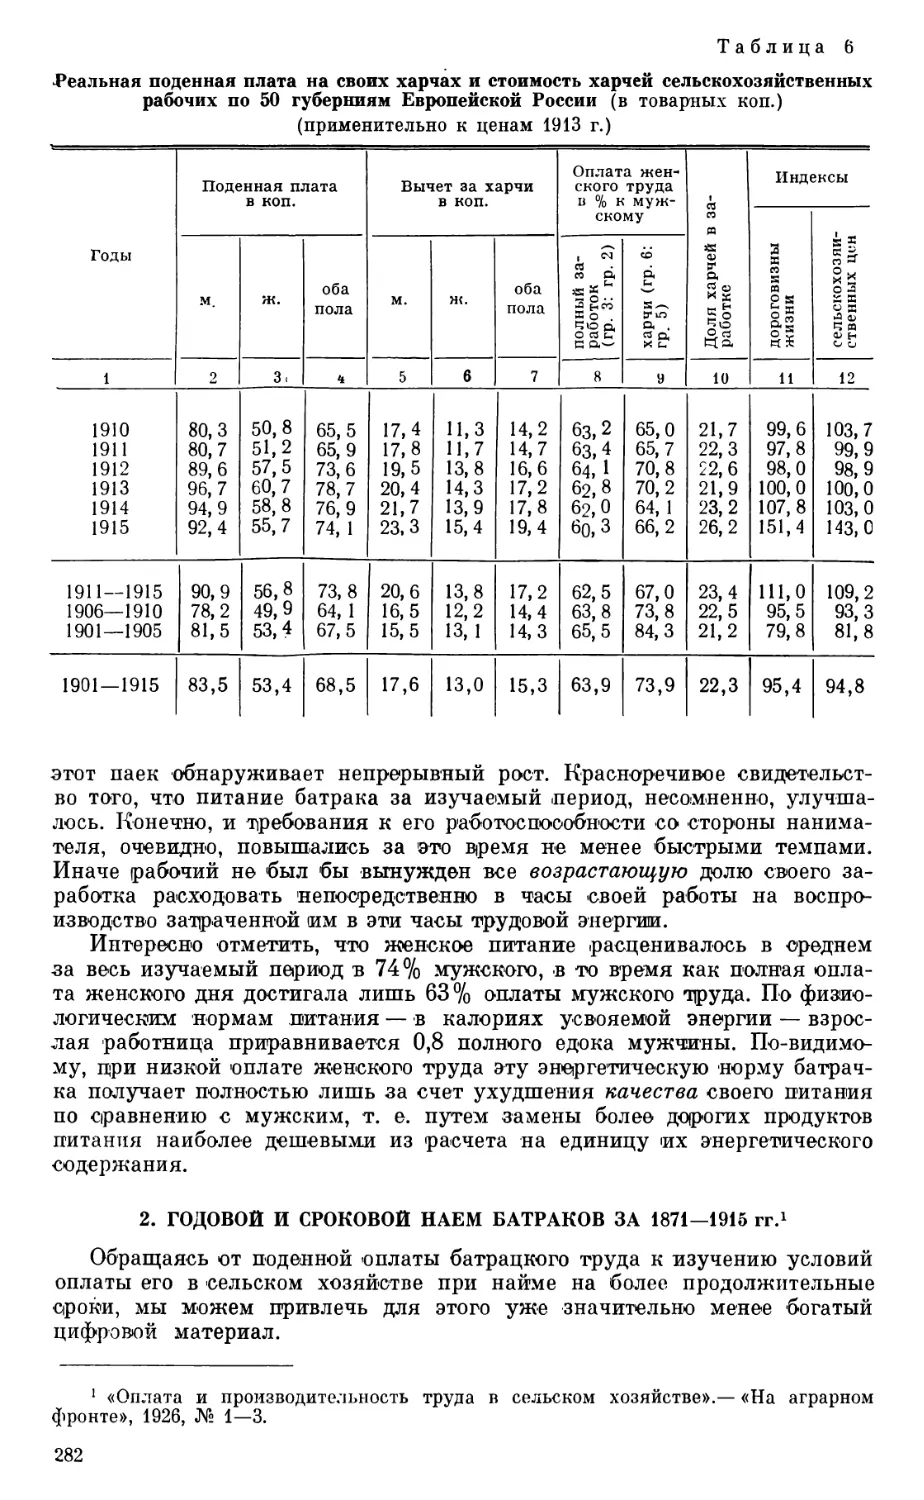 2. Годовой и сроковой наем батраков за 1871—1915 гг